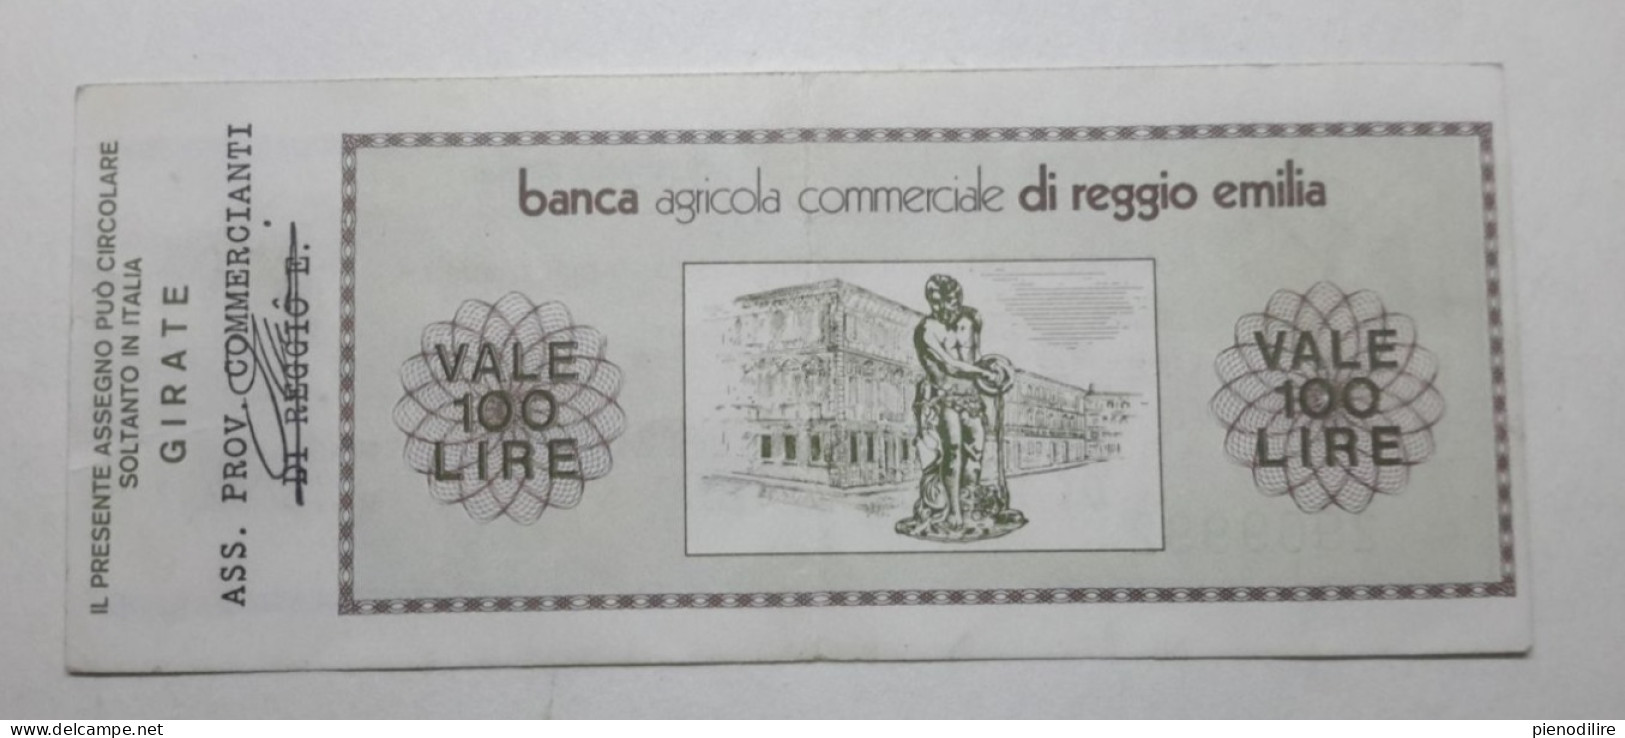 BANCA AGRICOLA COMMERCIALE DI REGGIO EMILIA, 100 Lire 01.06.1976 Ass. Prov. Commercianti (A1.42) - [10] Cheques En Mini-cheques